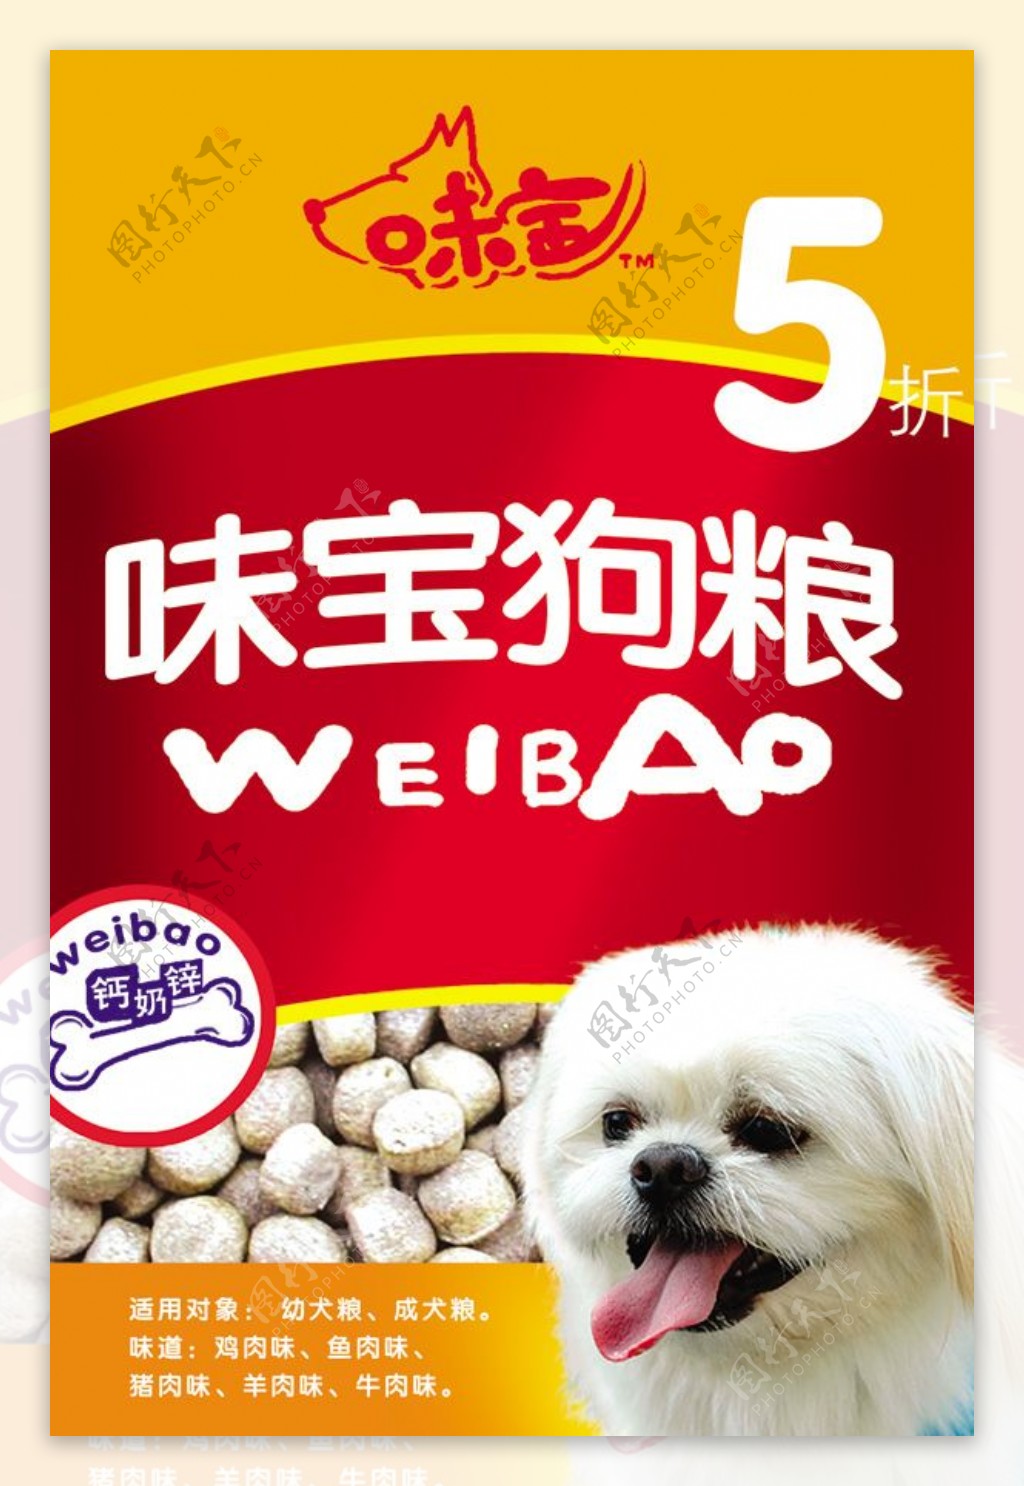 宠物食品海报